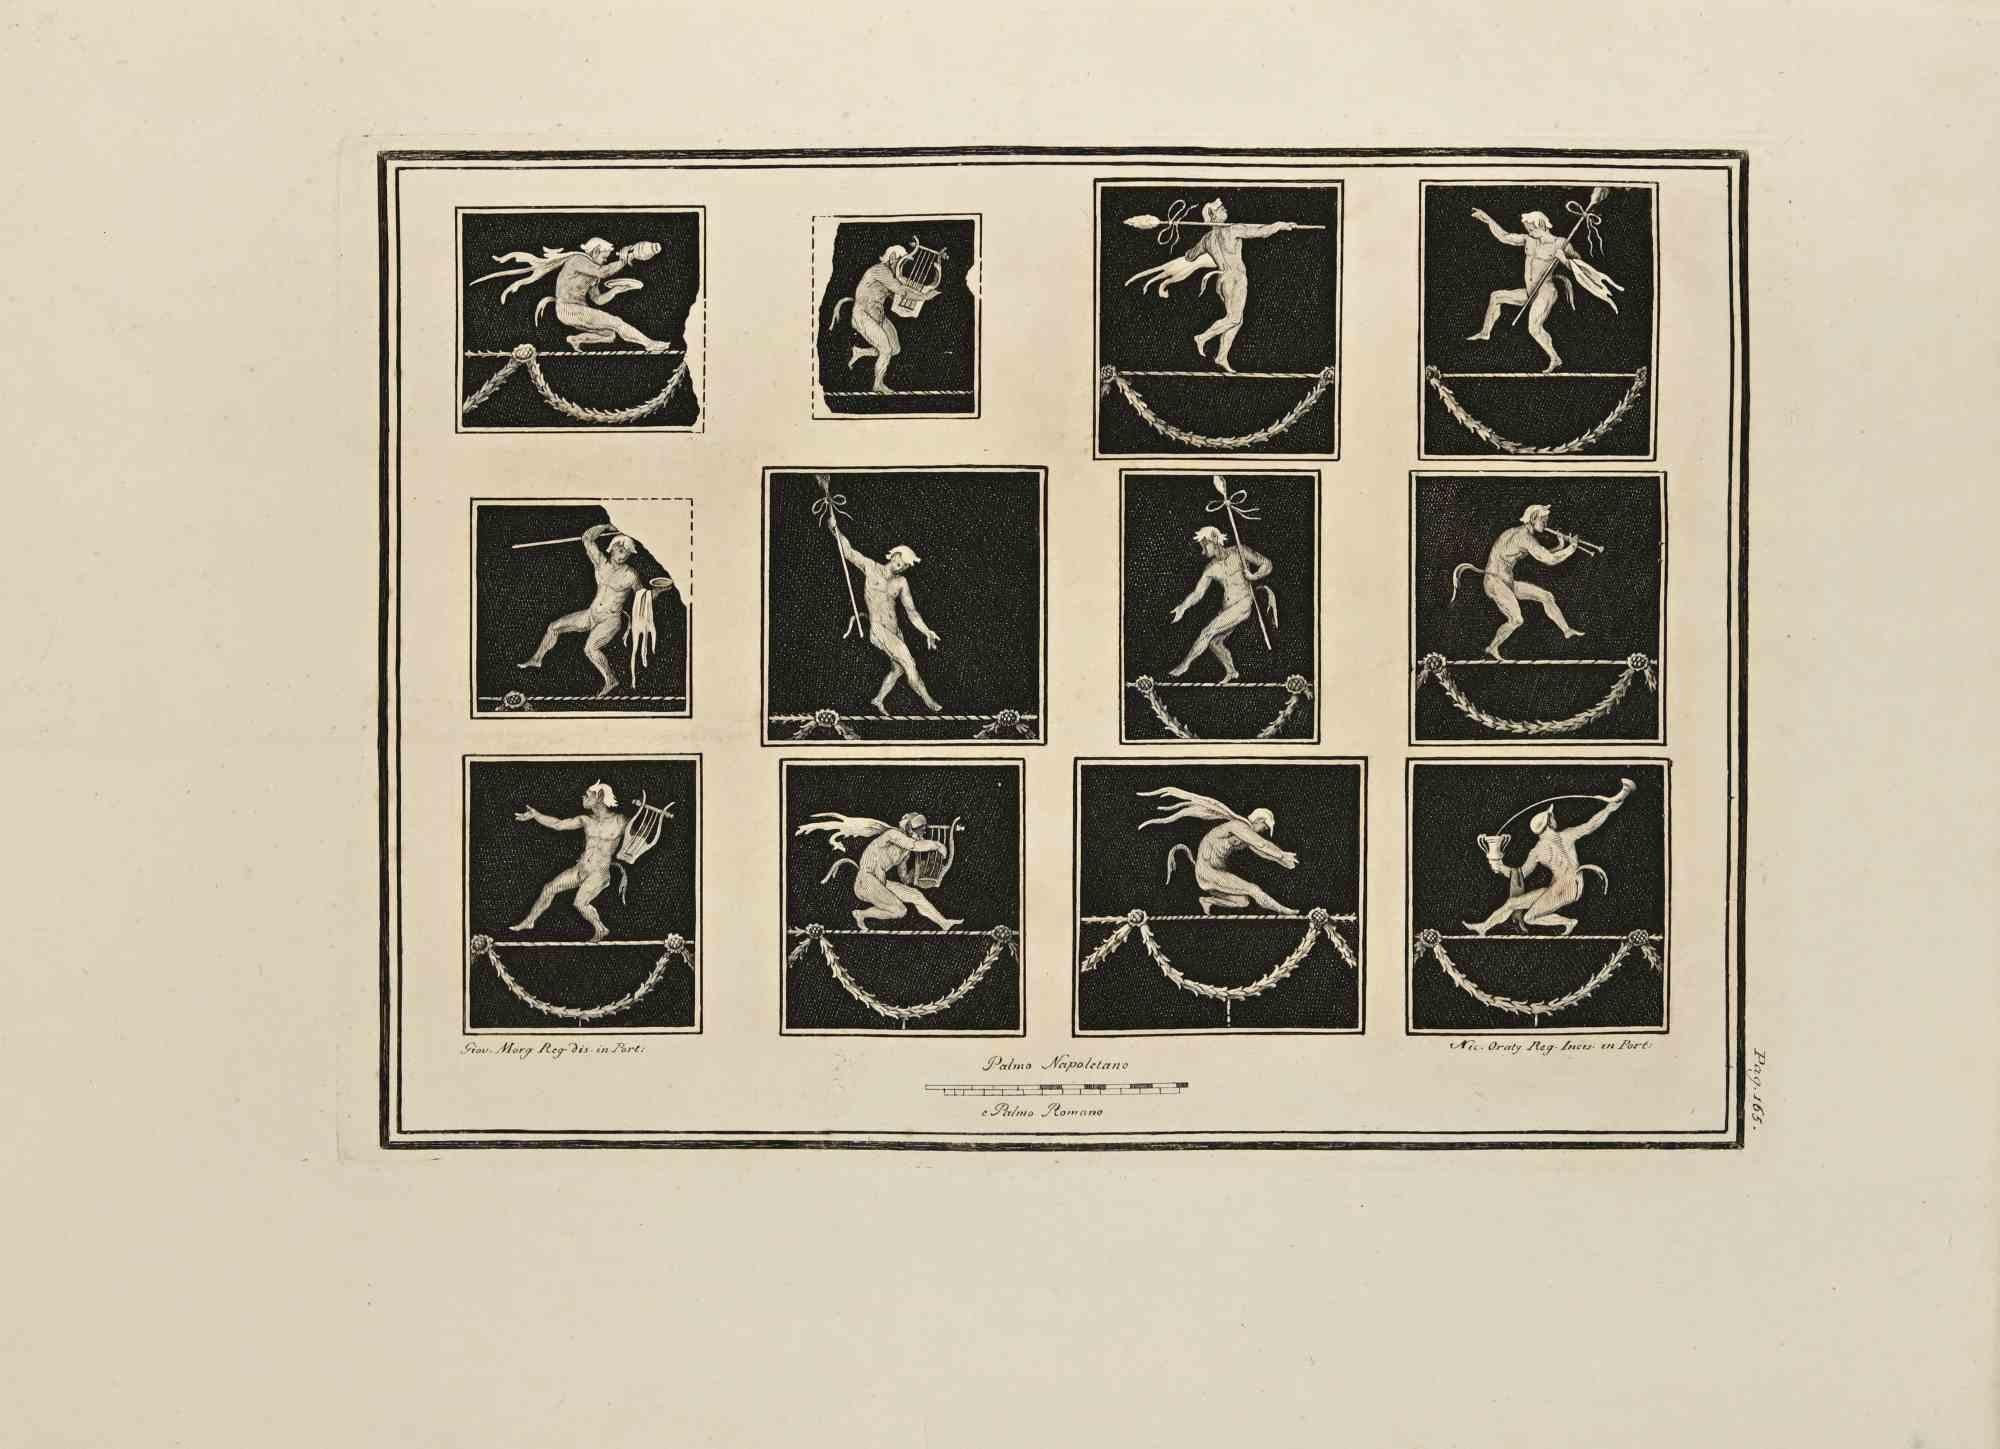 Die Ikonographie des Pan, Fresko aus den "Altertümern von Herculaneum" ist eine Radierung auf Papier von Carlo Oraty aus dem 18. Jahrhundert.

Signiert auf der Platte.

Guter Zustand mit einigen Faltungen und stockfleckig.

Die Radierung gehört zu